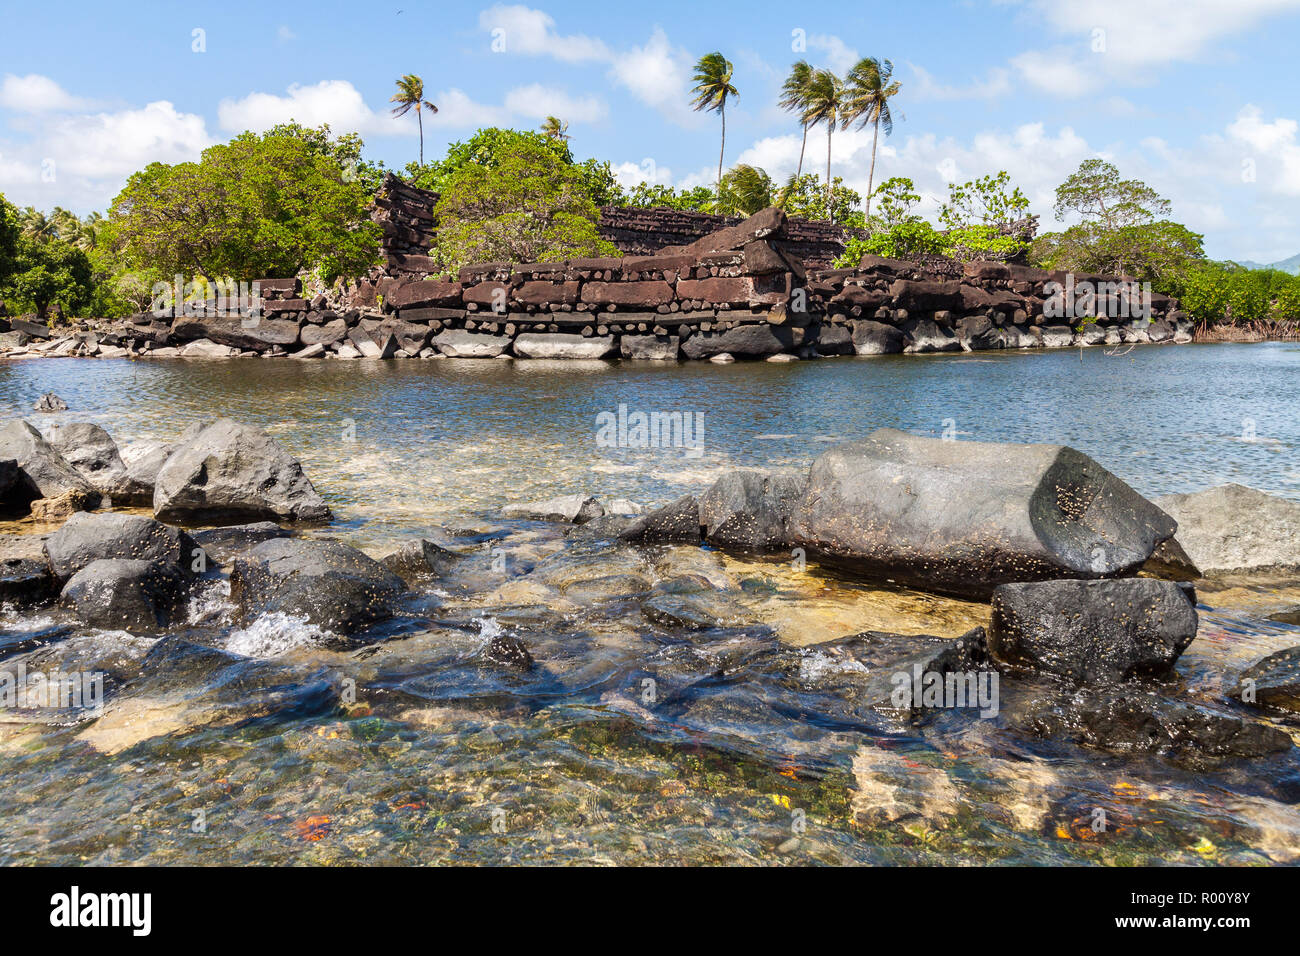 Nan Madol ciudad de piedra en ruinas prehistóricas. Antiguas murallas construidas sobre arrecifes artificiales de islas unidas por canales en una laguna de Pohnpei, Micronesia, Oceanía Foto de stock